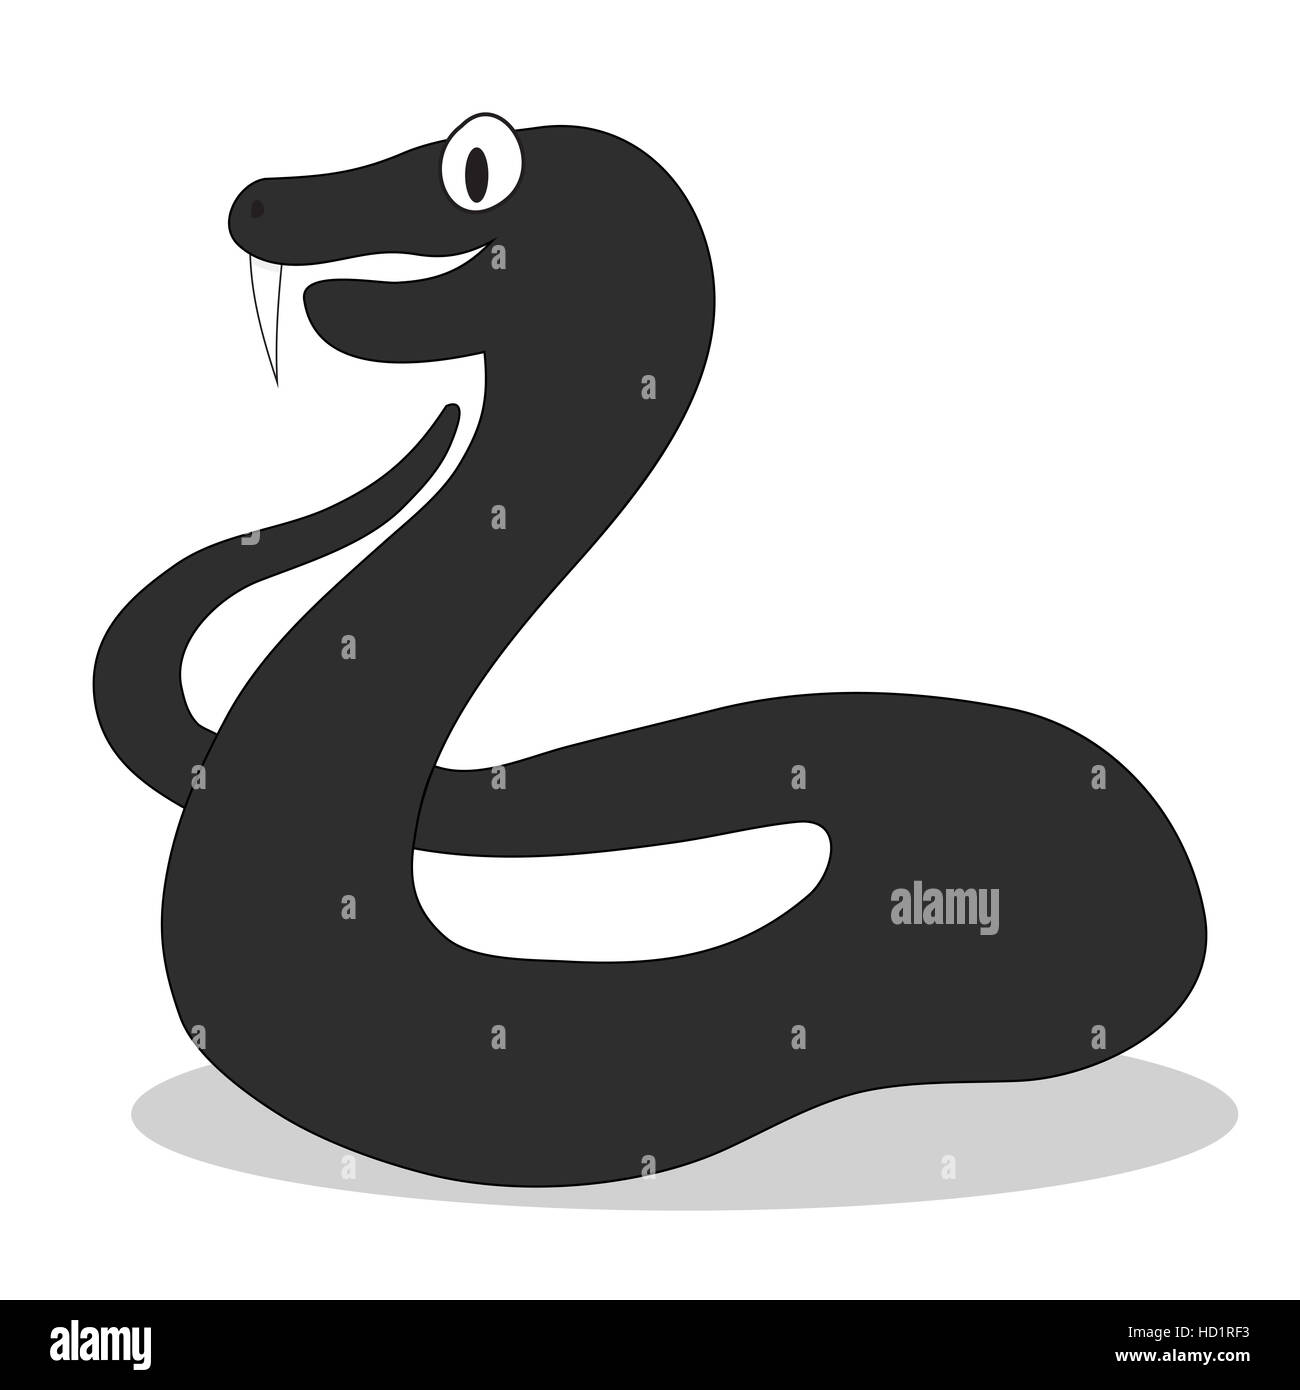 Viper character dark illustration. Snake cobra vector, viper snake isolated Stock Photo